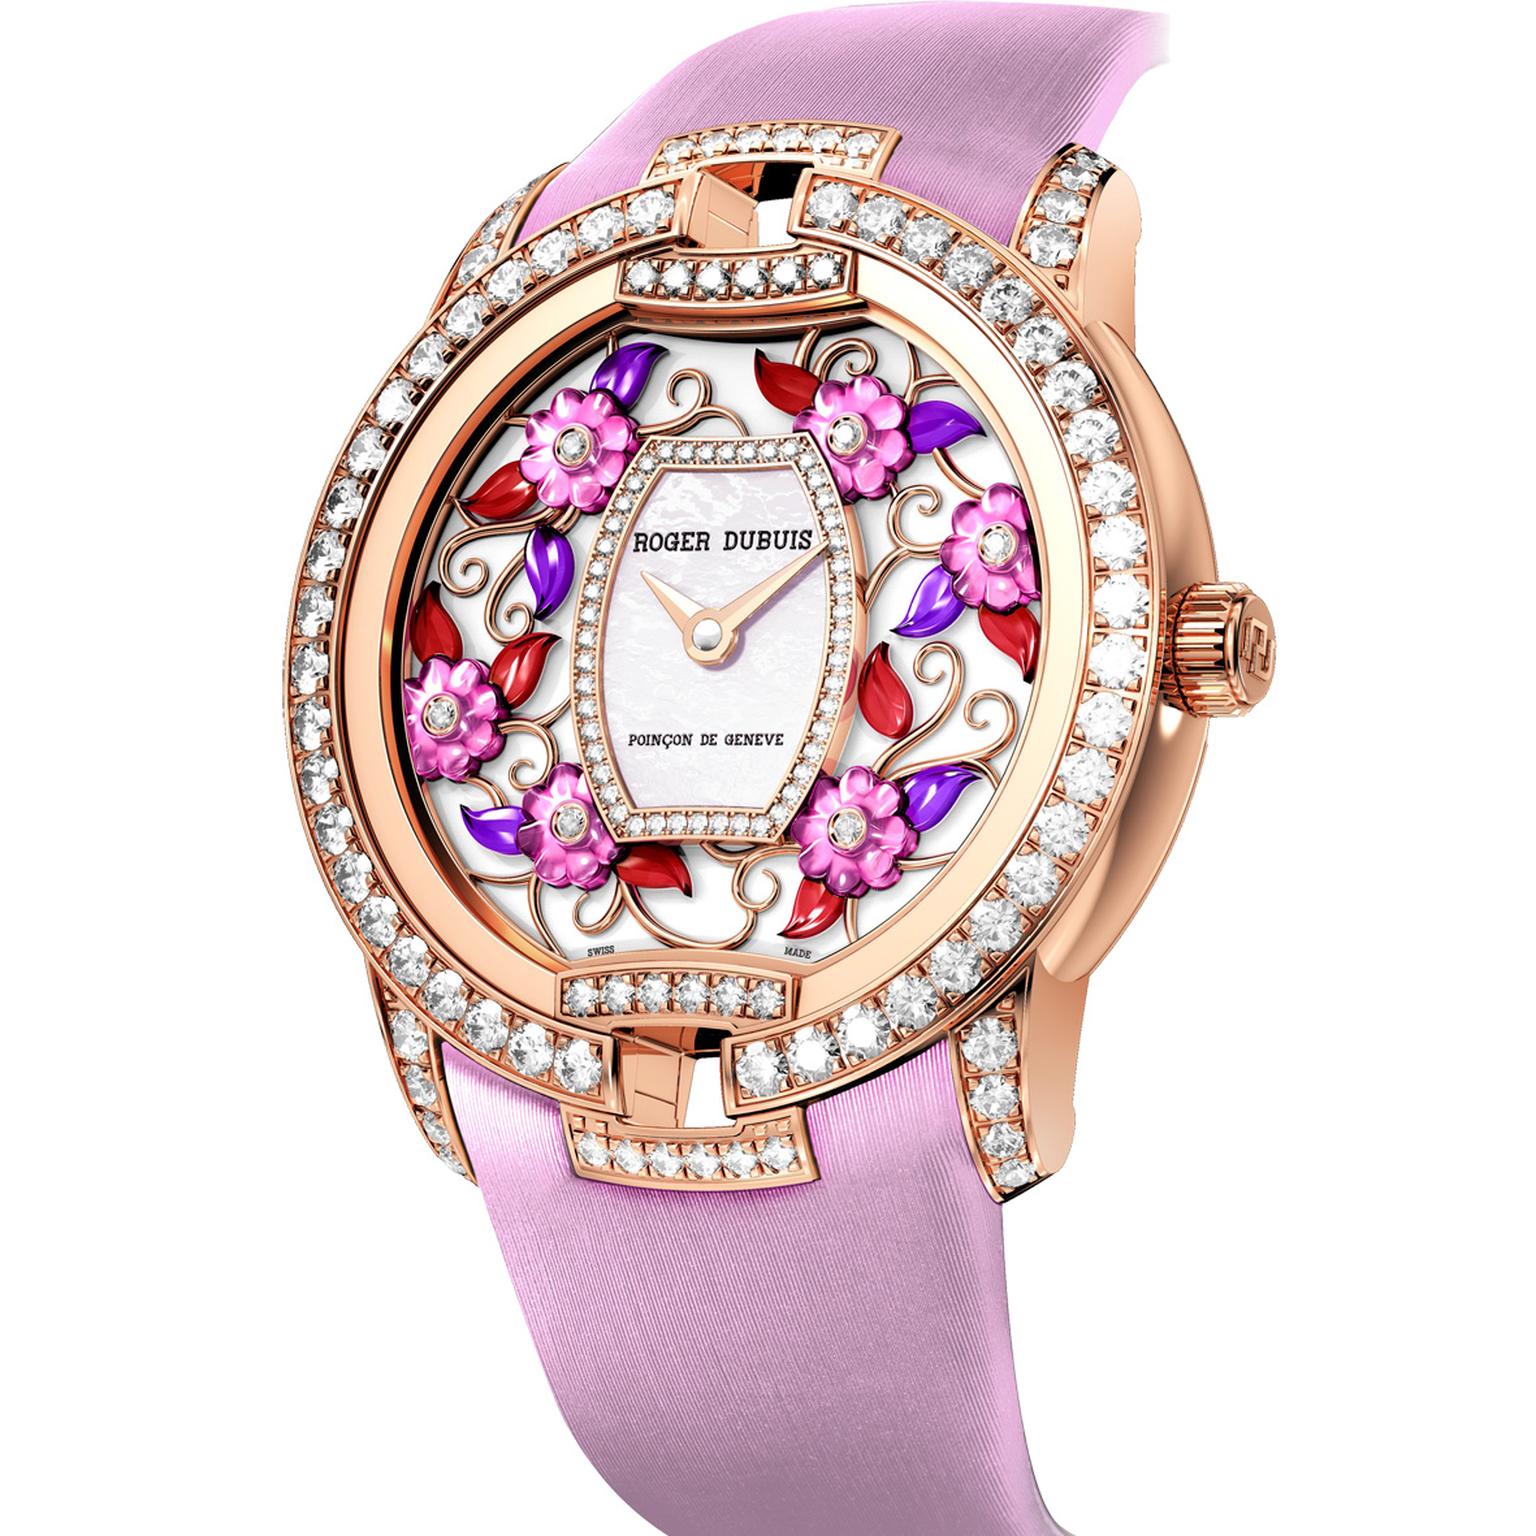 Roger Dubuis Blossom Velvet Pink watch